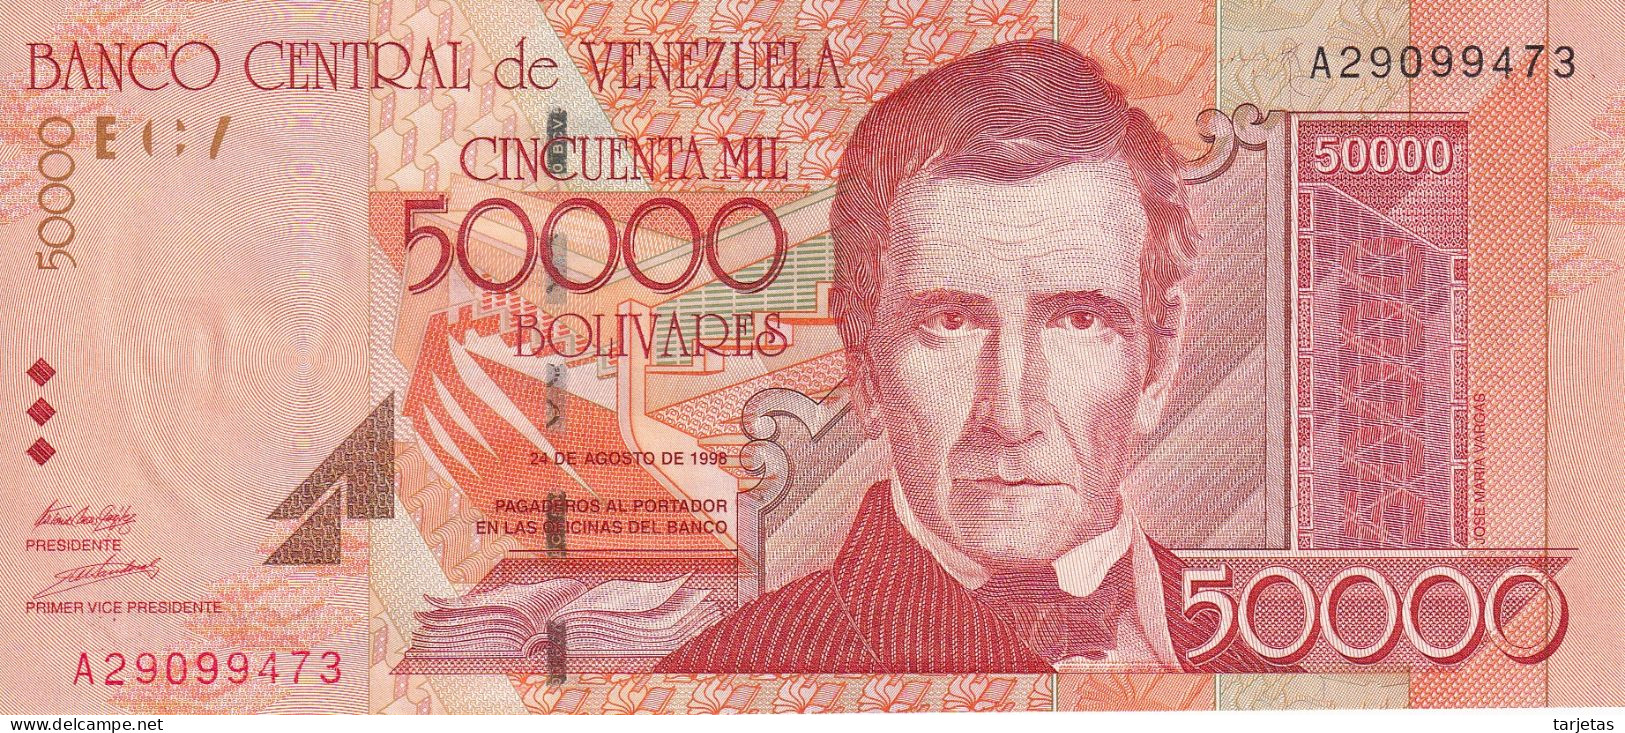 BILLETE DE VENEZUELA DE 50000 BOLIVARES DEL AÑO 1998 SIN CIRCULAR (UNC) (BANKNOTE) - Venezuela